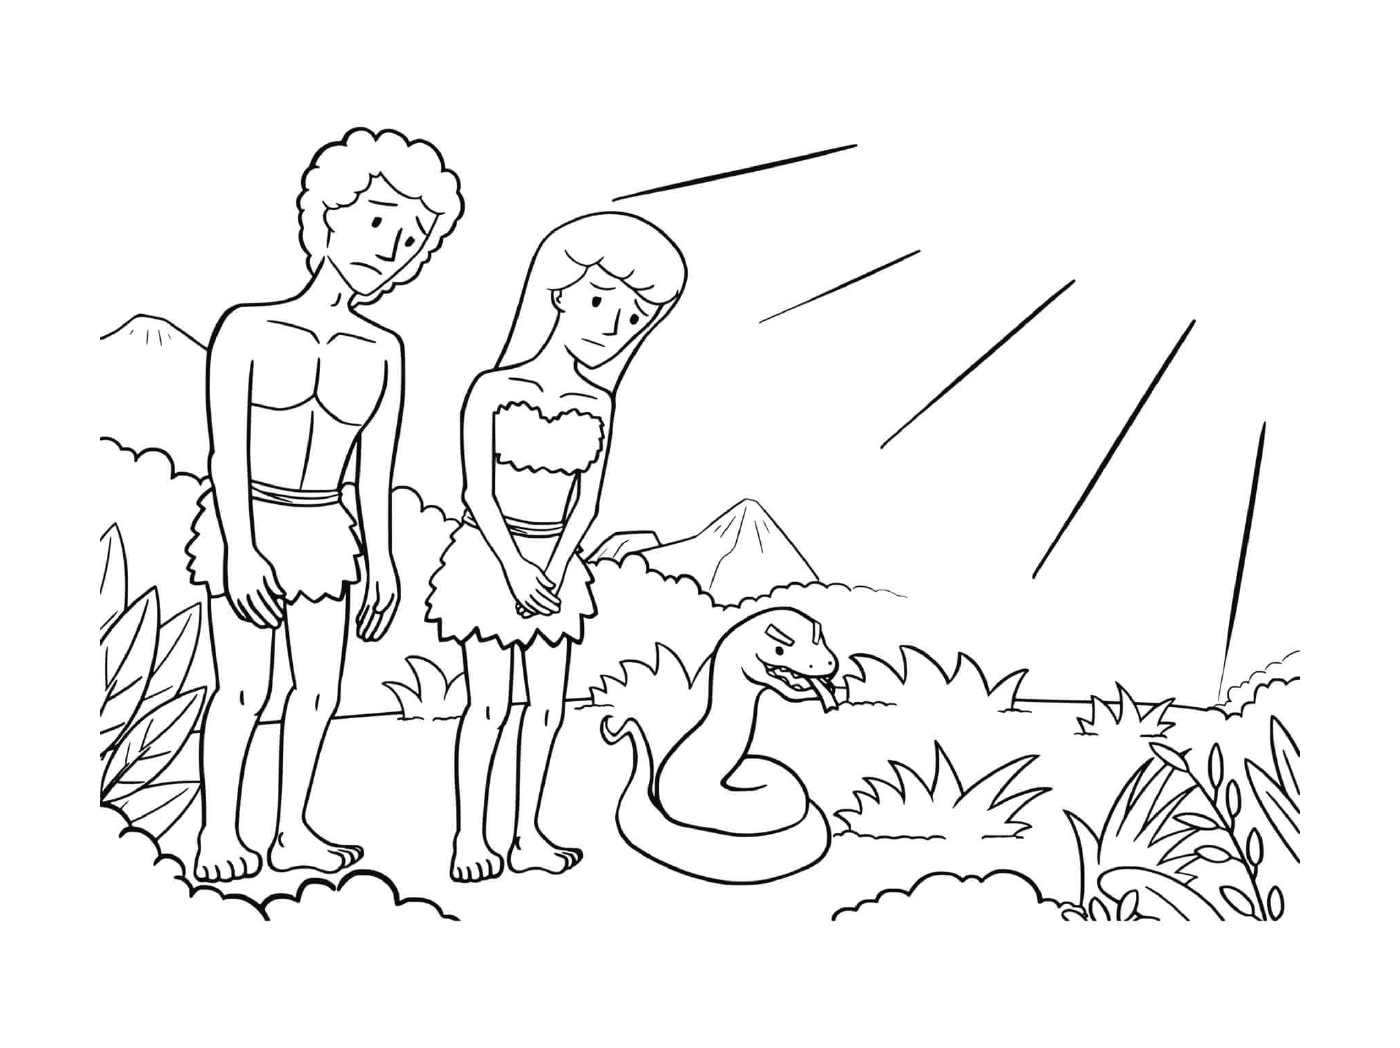  Uomo e donna in piedi accanto a un serpente 